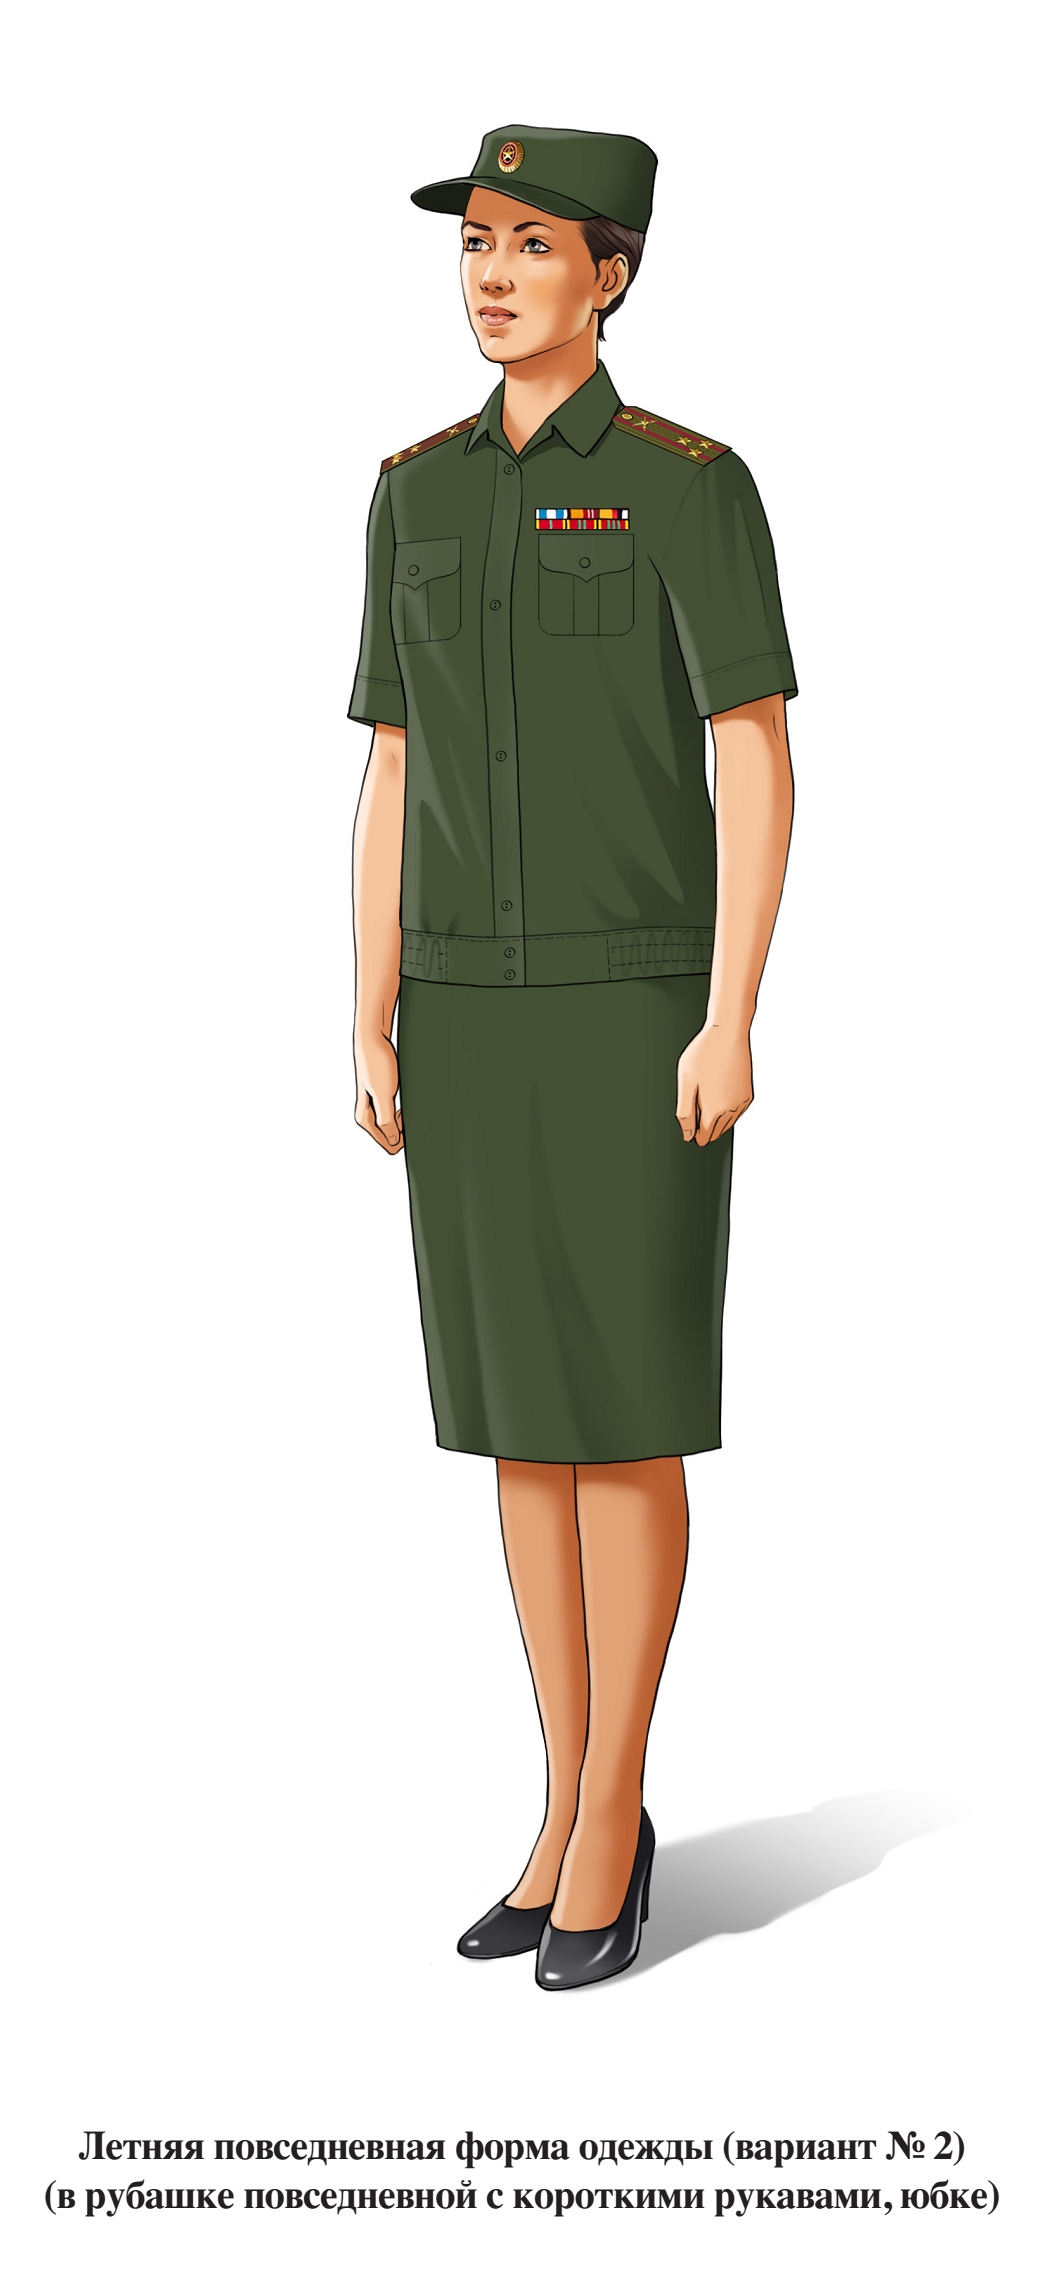 Летняя повседневная форма военнослужащих женского пола, в юбке и рубашке с коротким рукавом